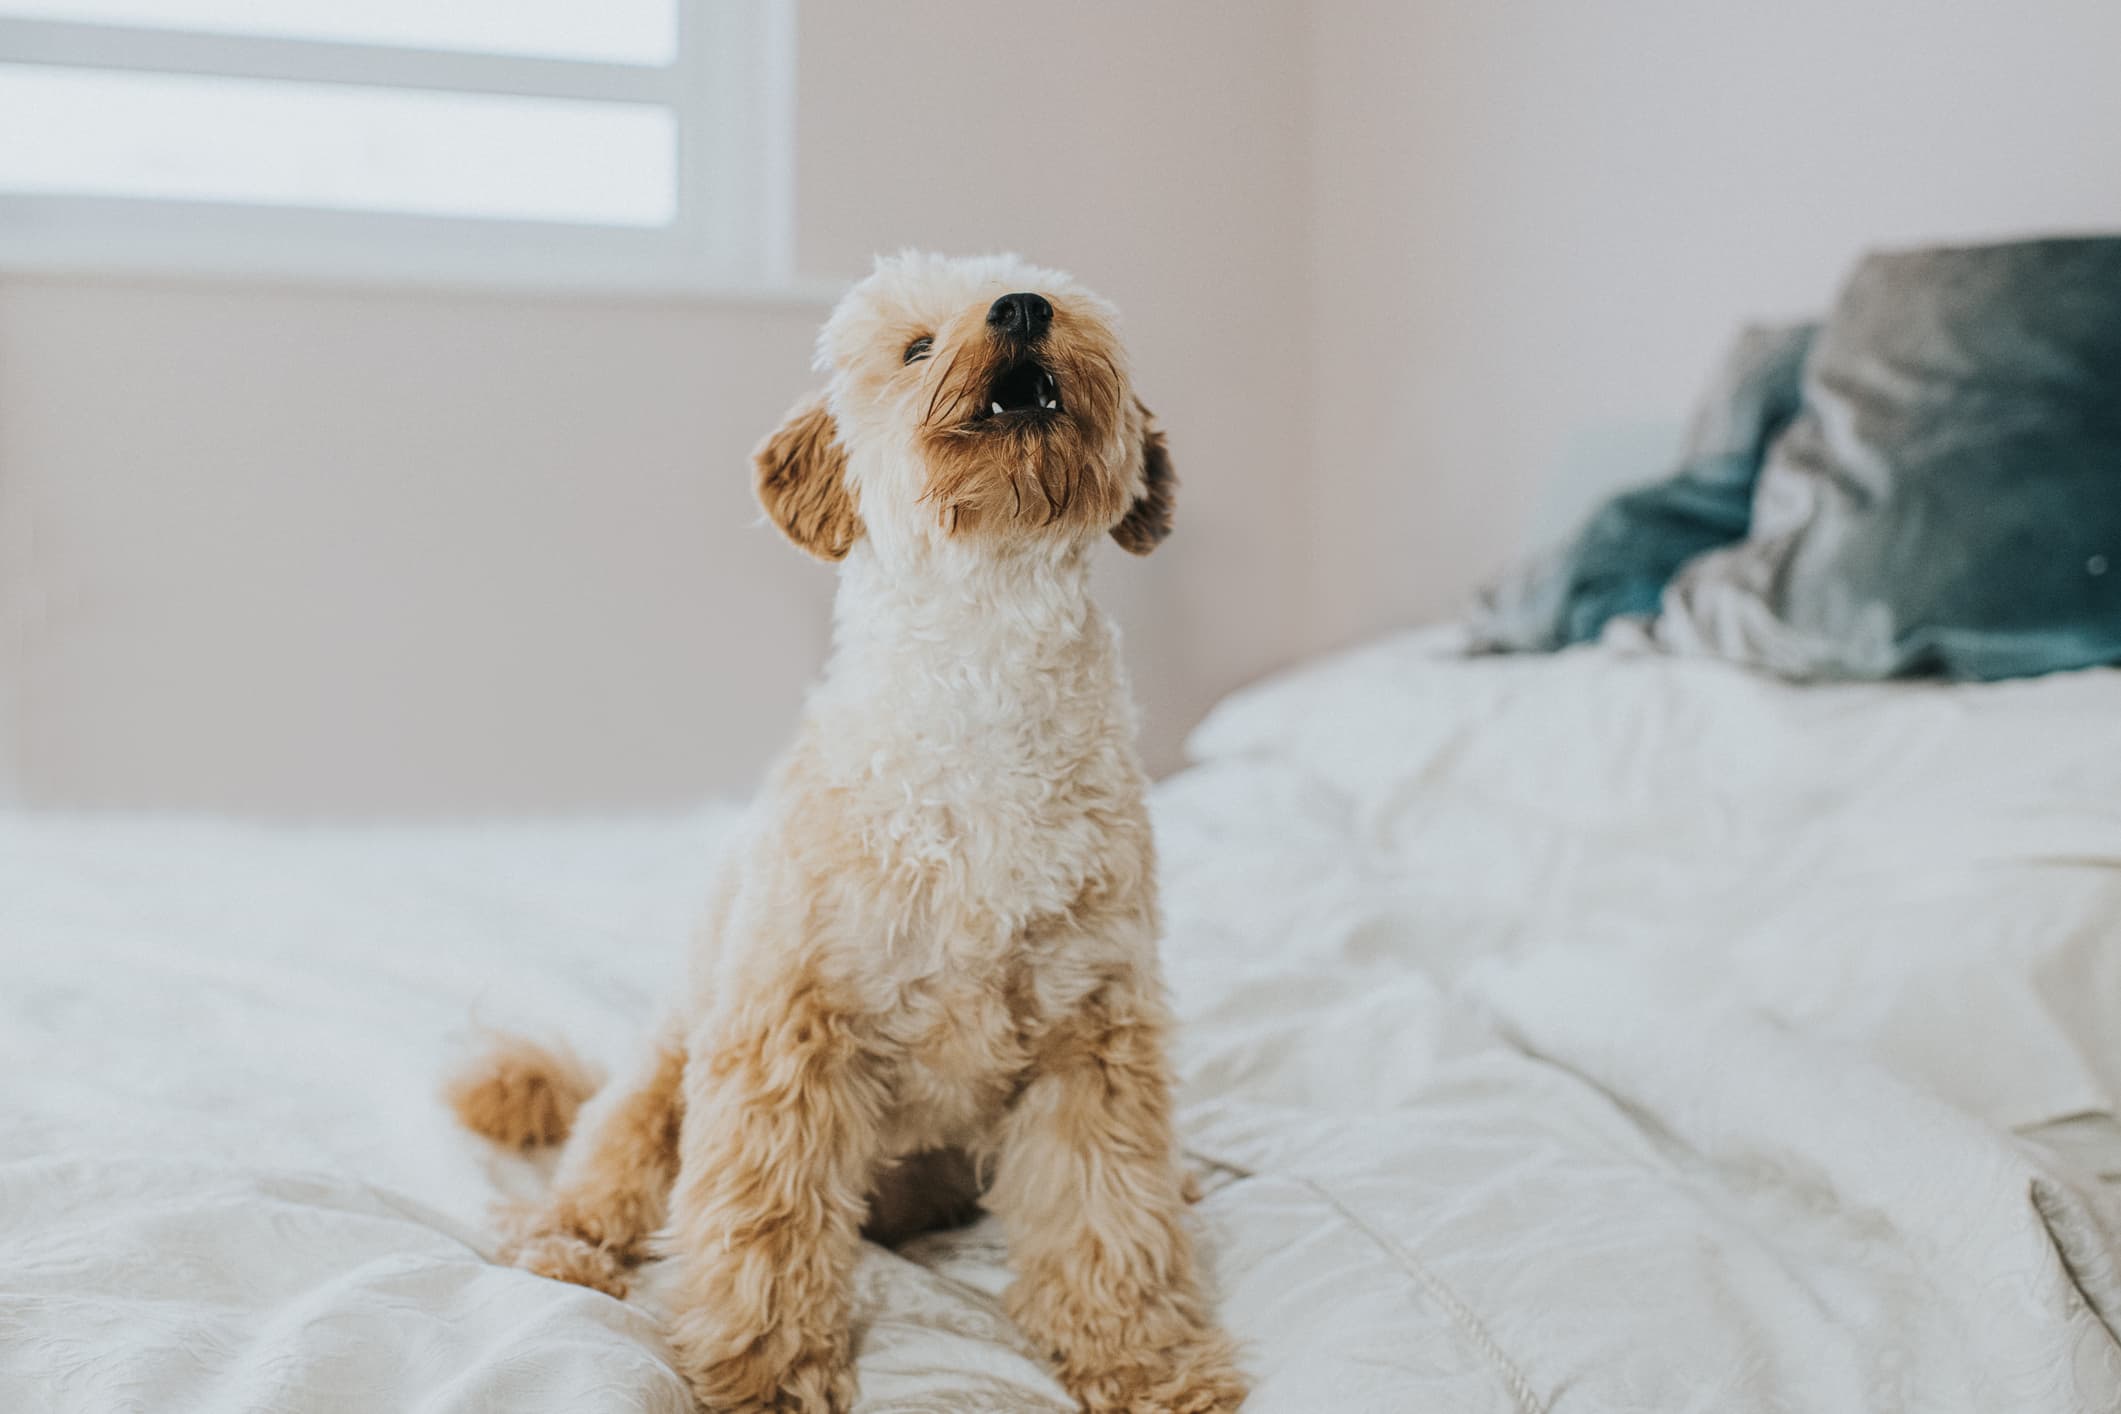 Um cão de pelagem média cor bege sentado na cama com lençóis brancos e travesseiros cinza olhando fixamente para cima e fundo desfocado.